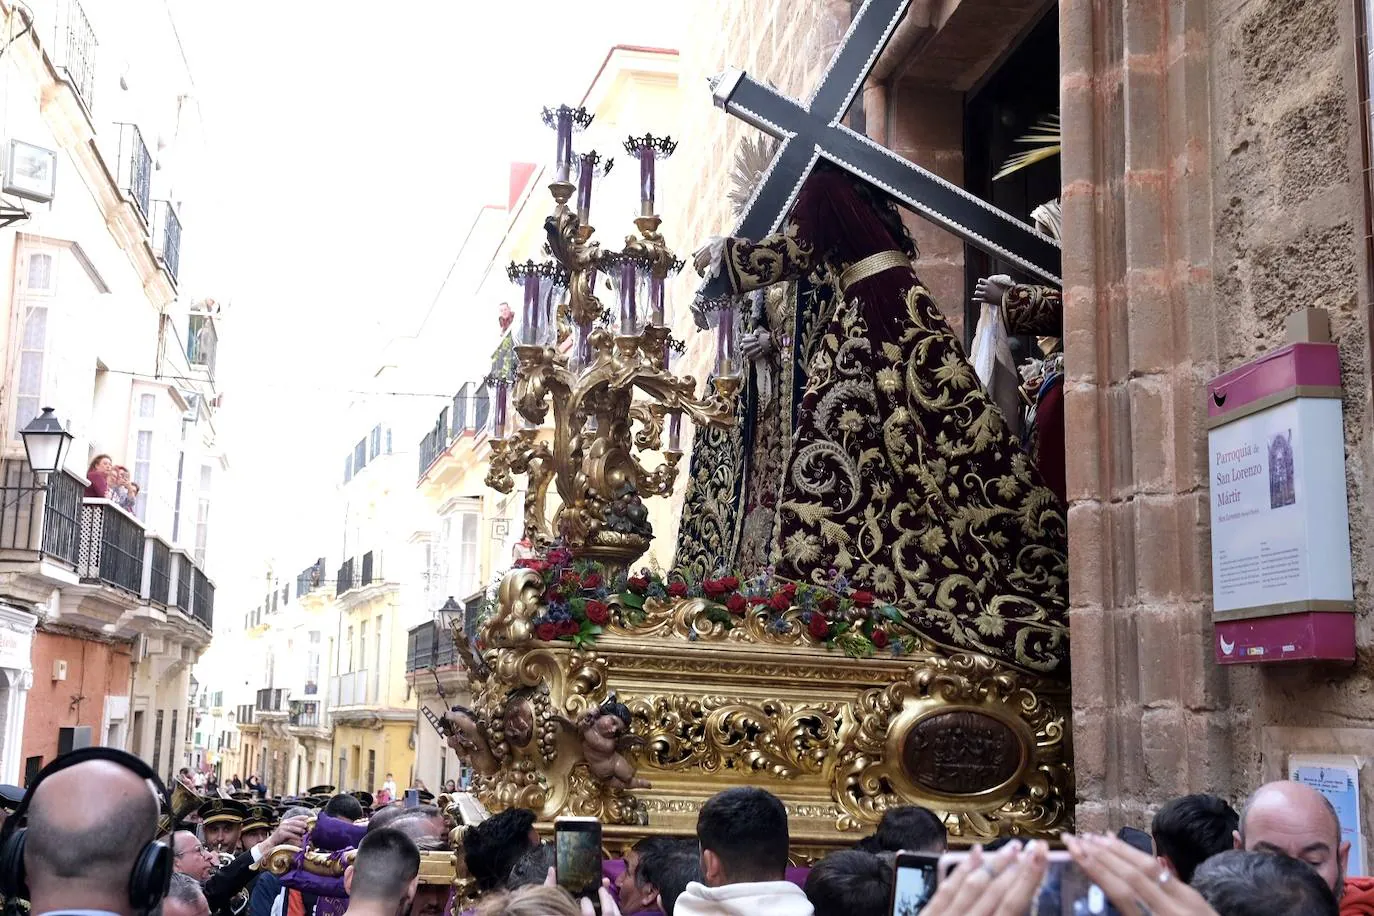 Fotos: Afligidos, el Jueves Santo en Cádiz